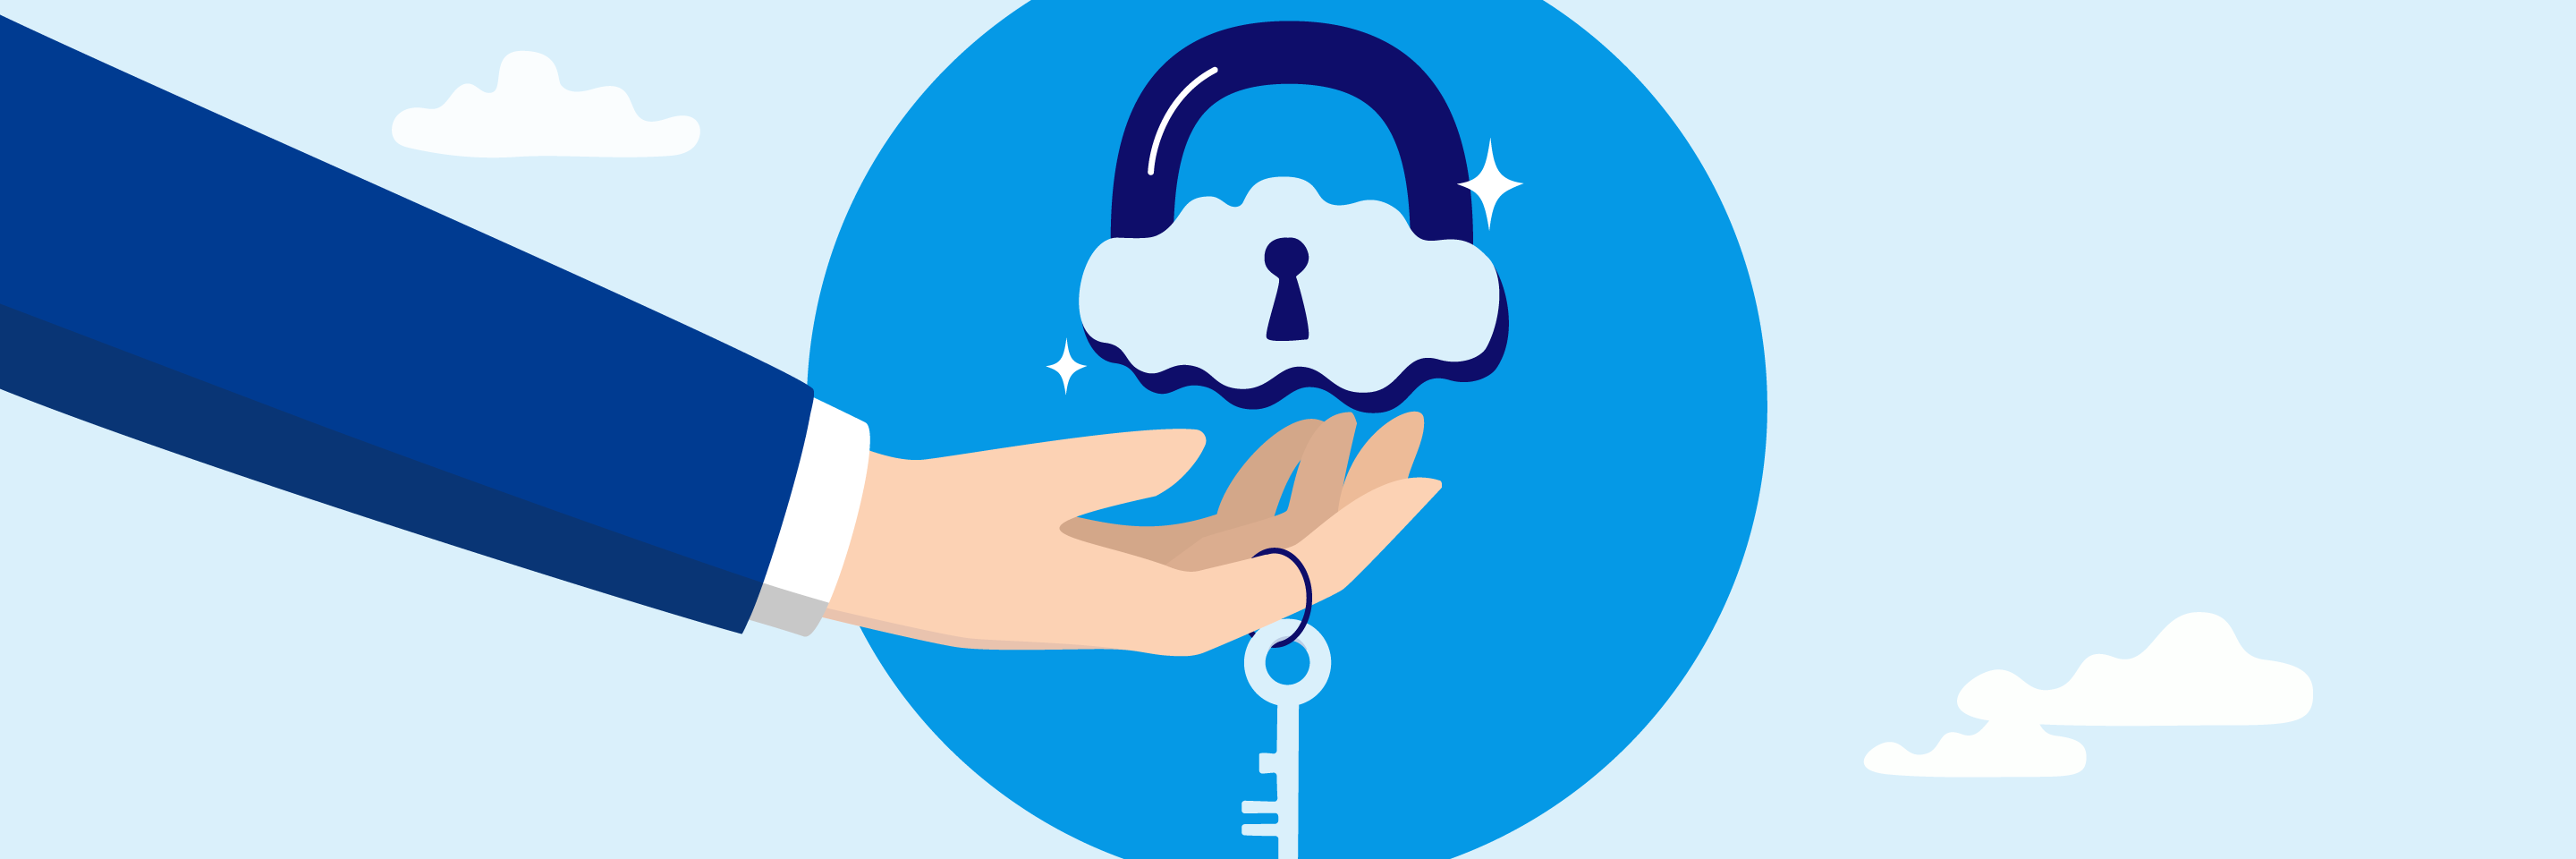 ゲートウェイセキュリティ powered by Prisma Accessで実現するセキュアなネットワーク環境